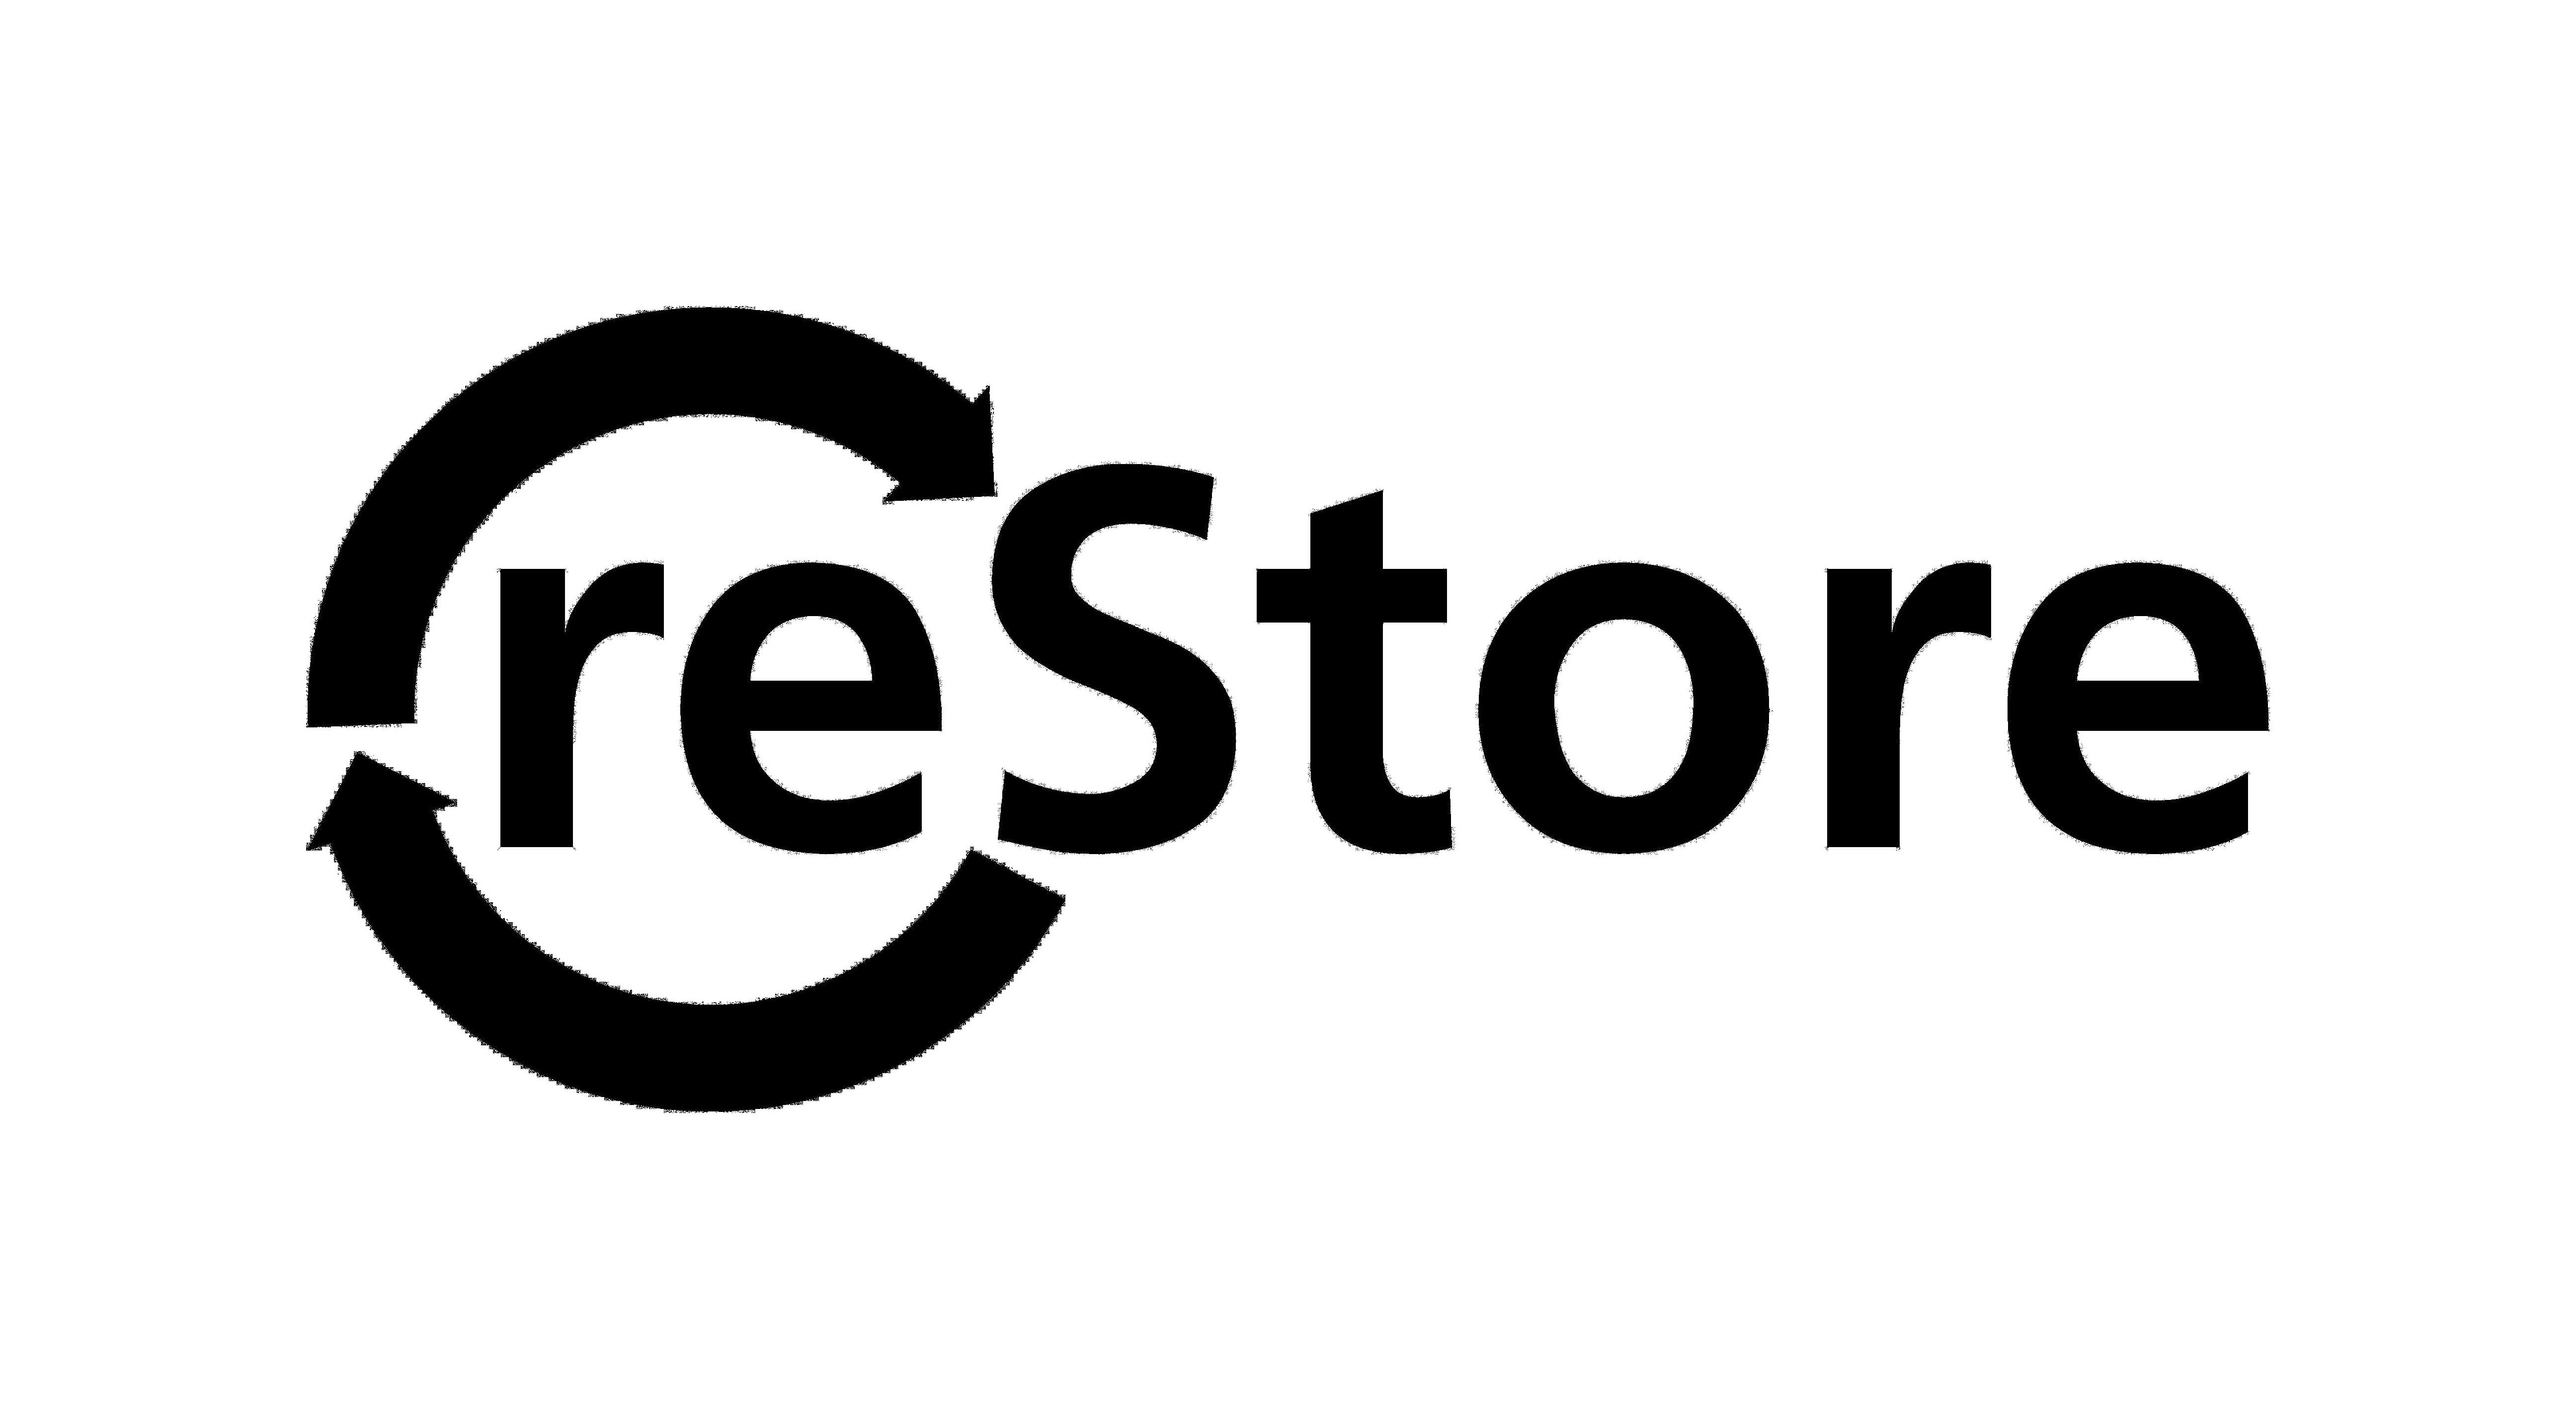 Trademark Logo RESTORE